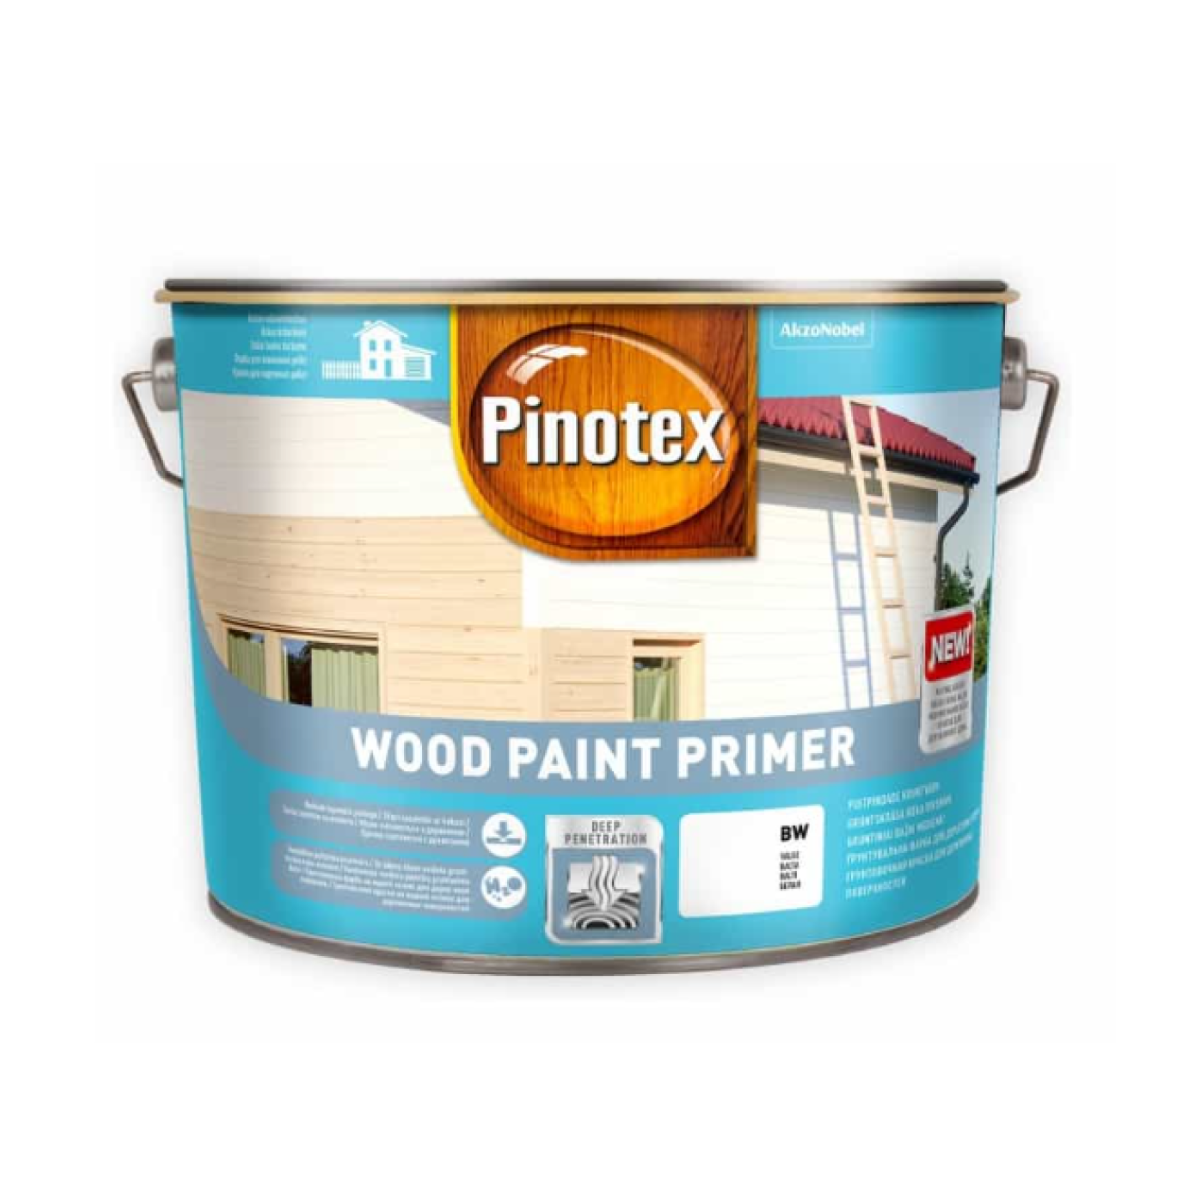 Pinotex Wood Paint Primer Ūdens bāzes gruntskrāsa koka virsmām, matēta, balta 10L